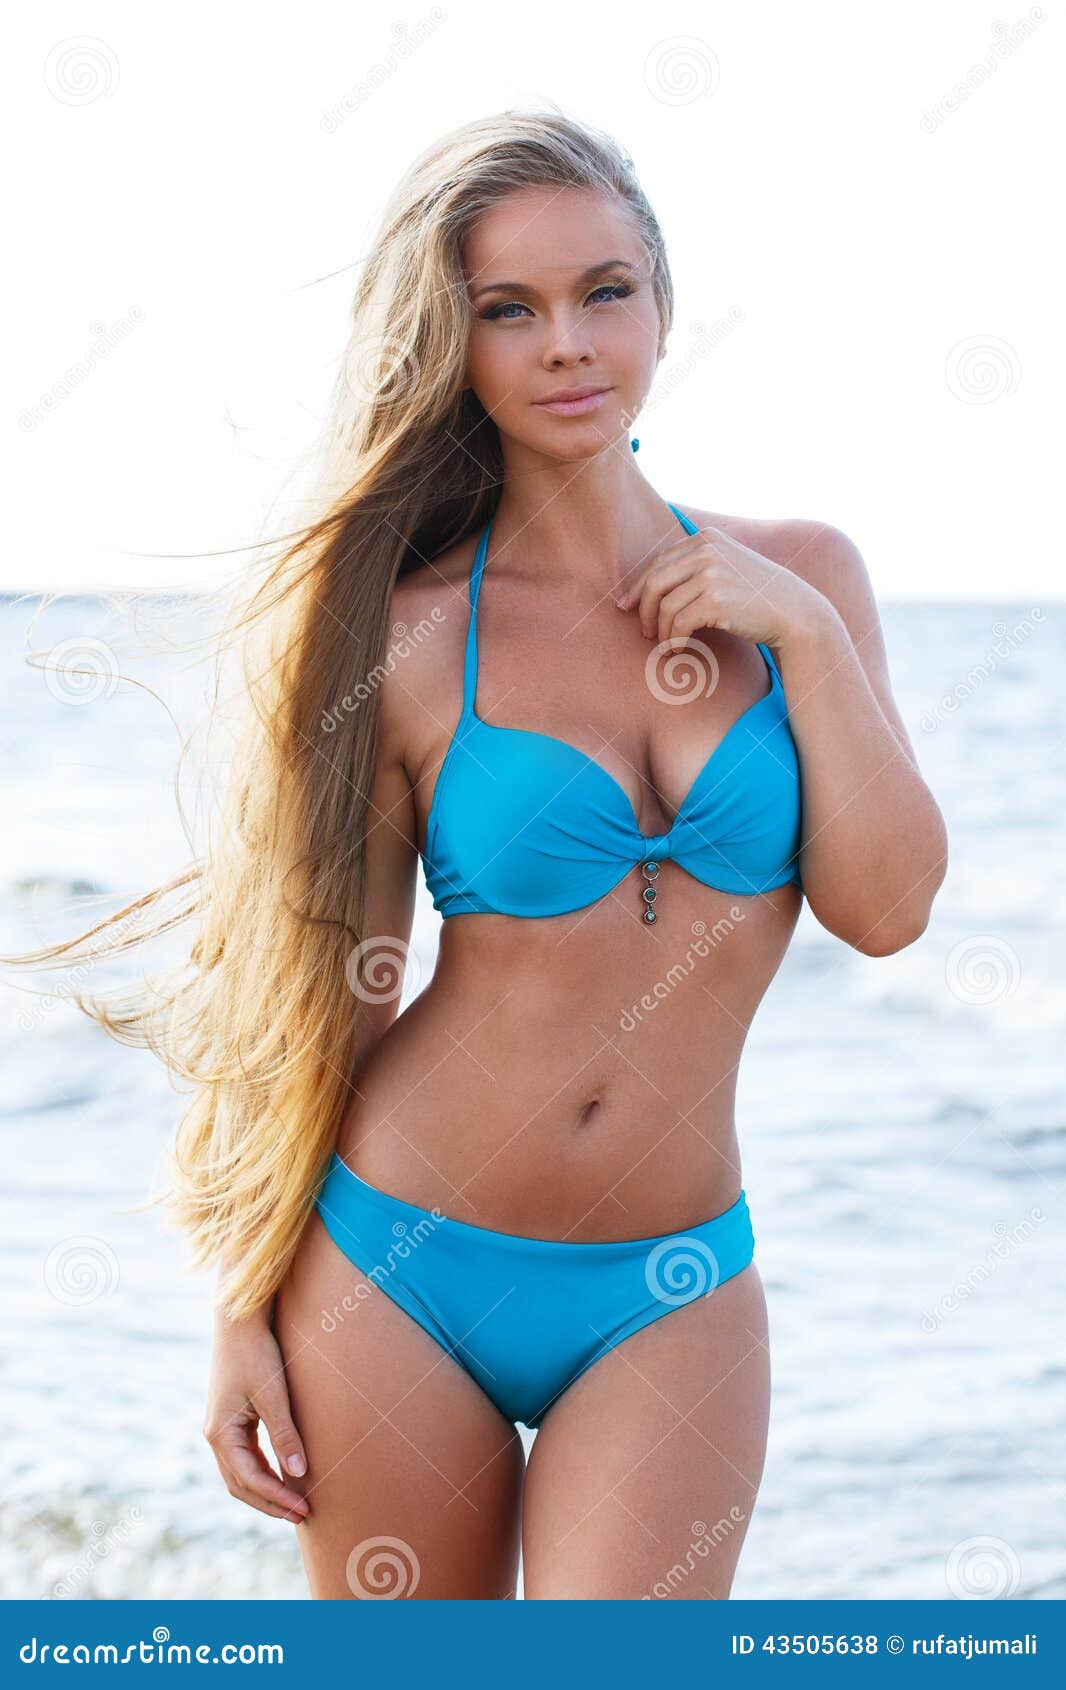 voyeur hot girls at the beach Sex Pics Hd